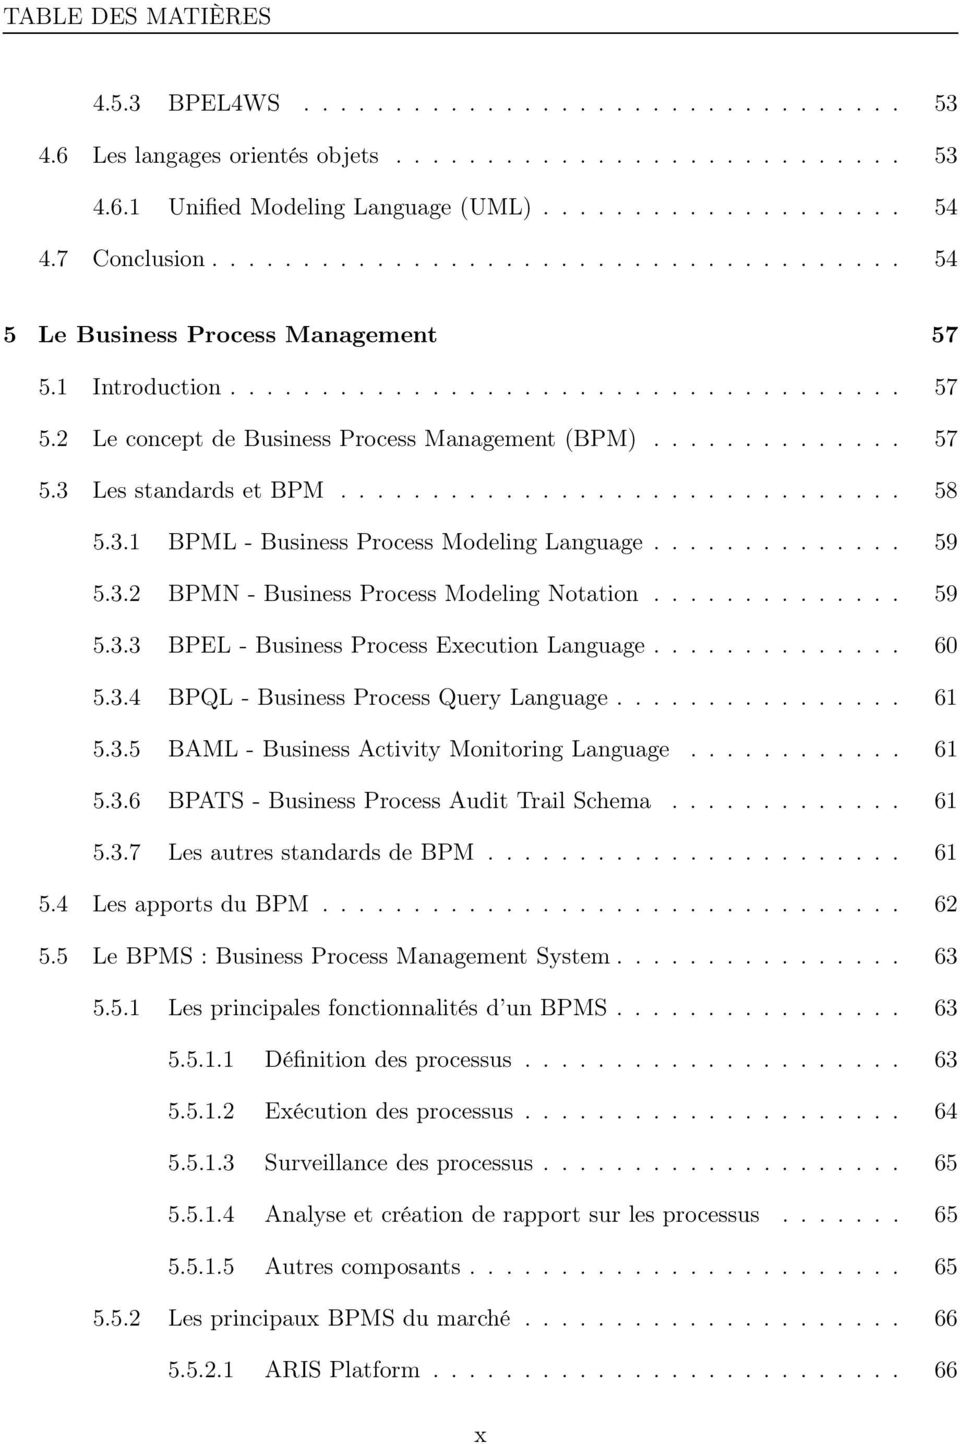 ............. 57 5.3 Les standards et BPM............................... 58 5.3.1 BPML - Business Process Modeling Language.............. 59 5.3.2 BPMN - Business Process Modeling Notation.............. 59 5.3.3 BPEL - Business Process Execution Language.